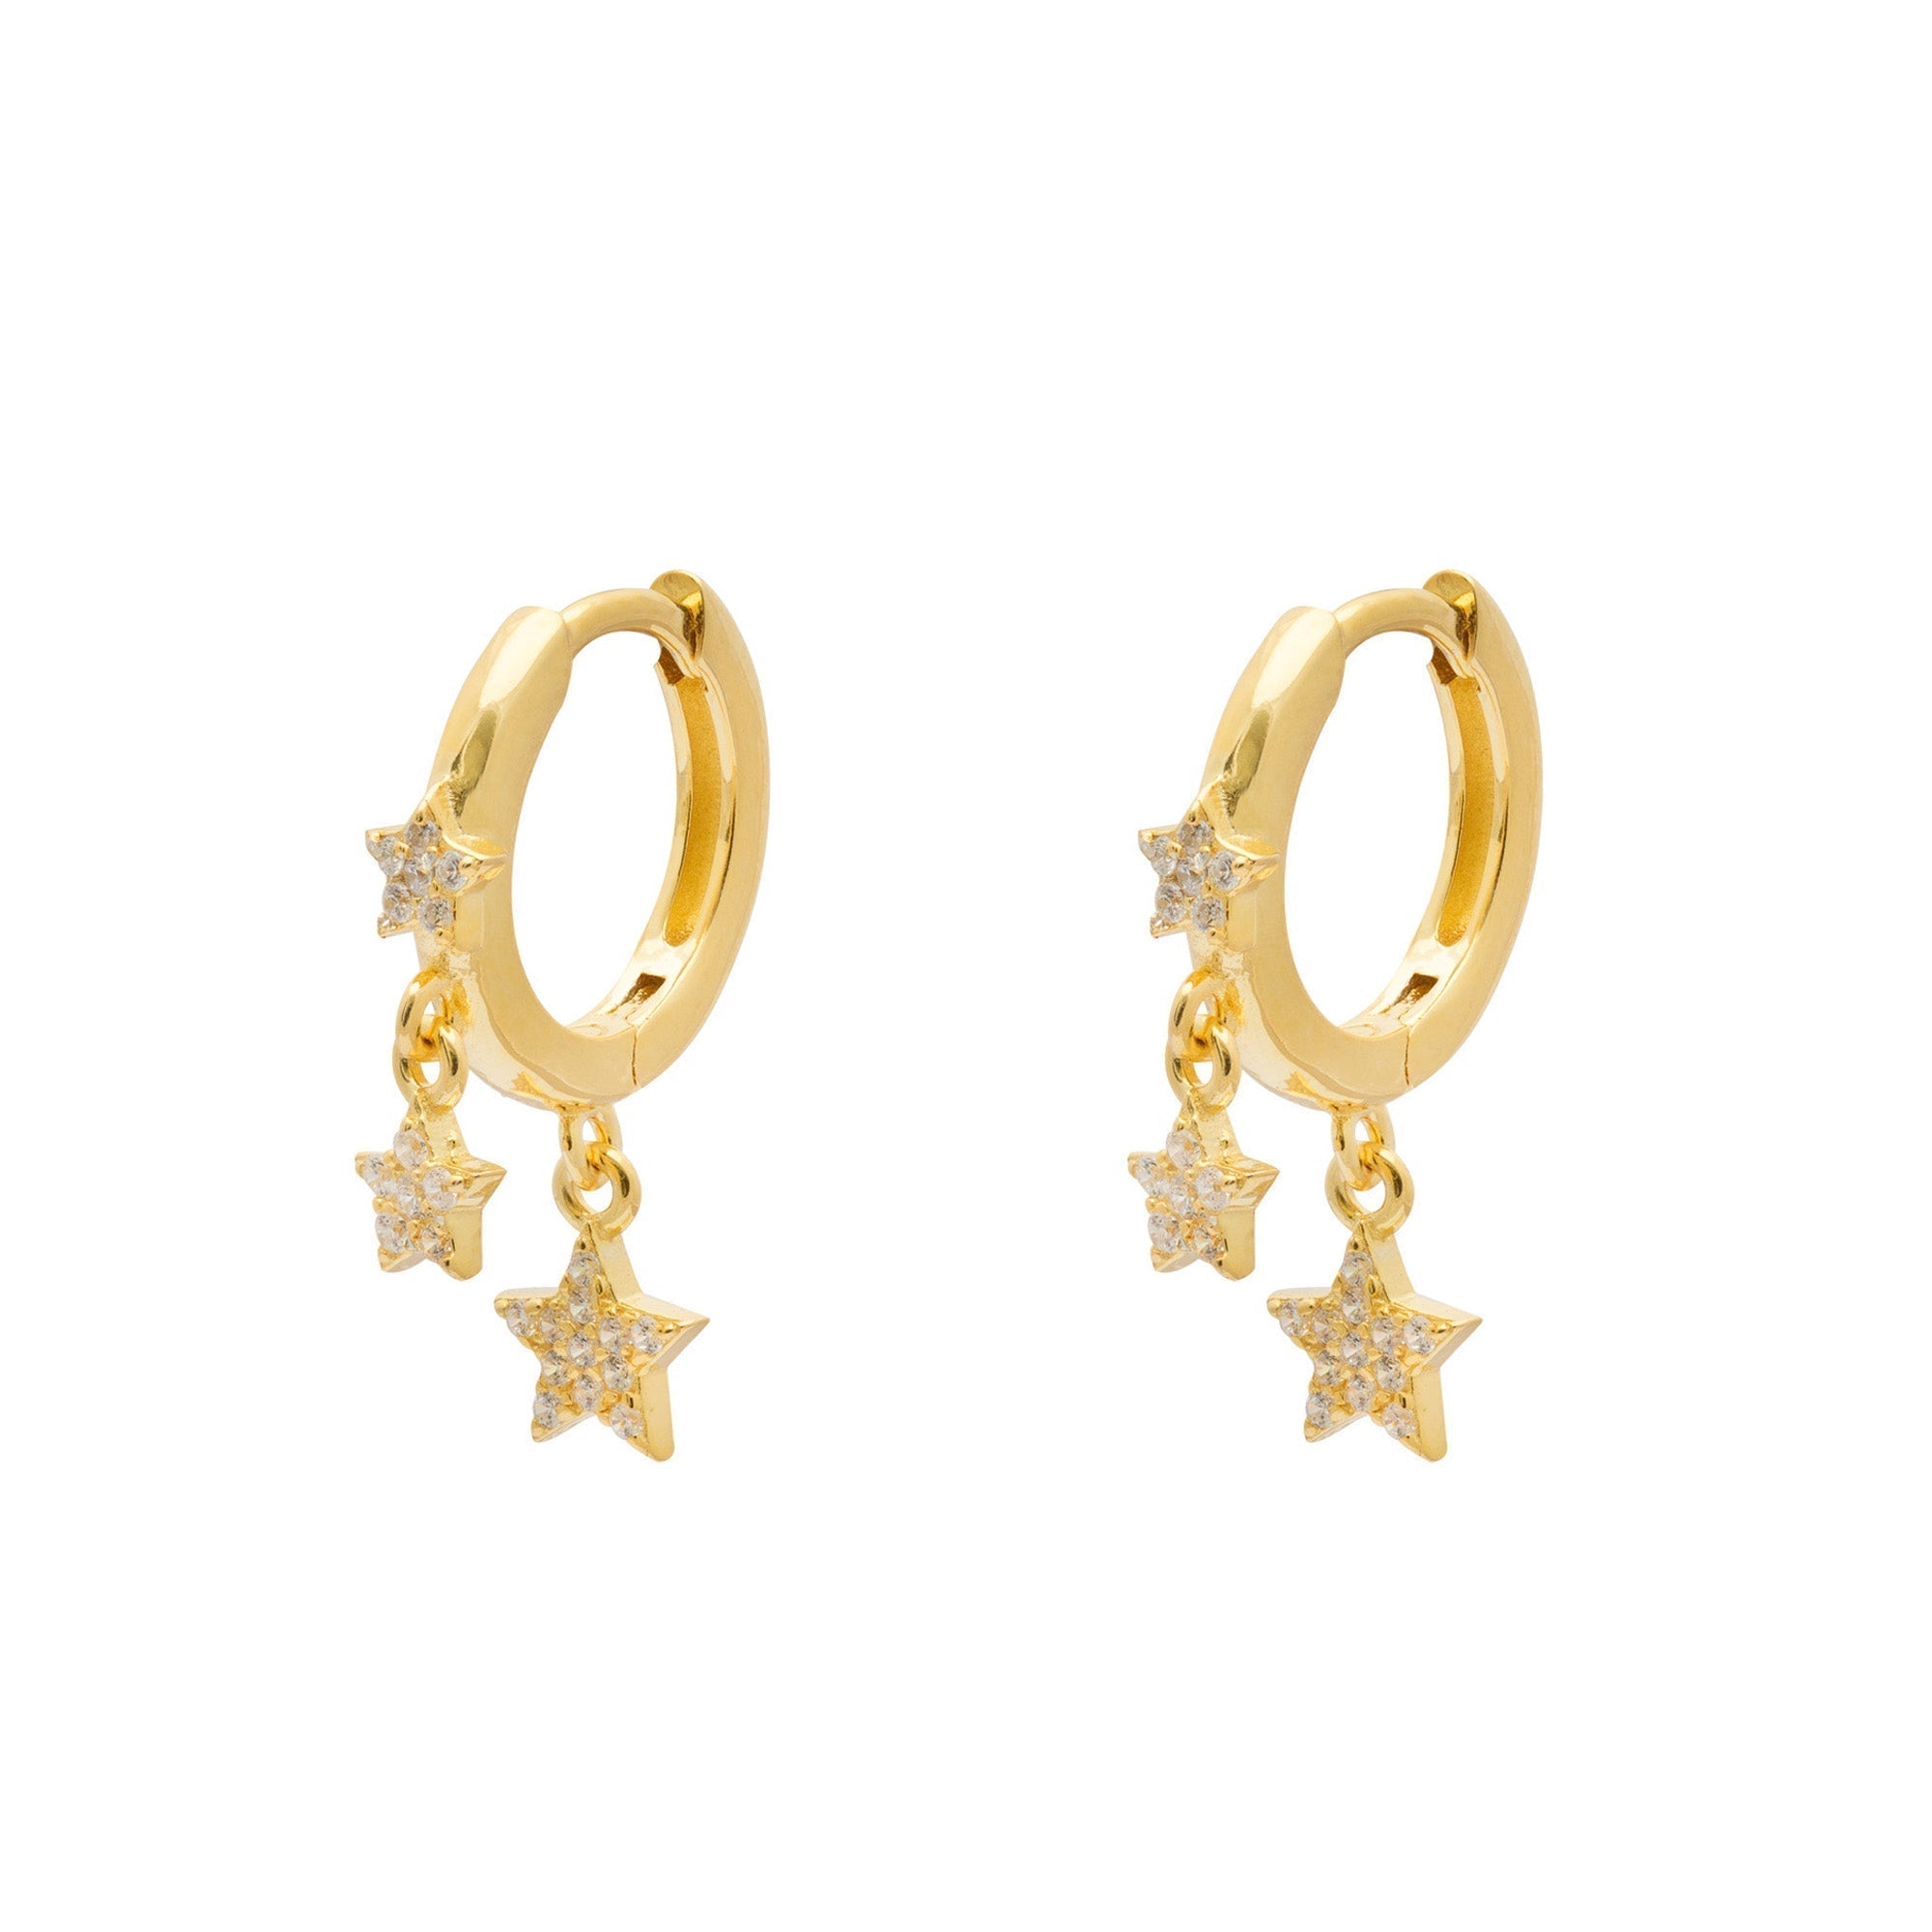 Duo Jewellery Earrings Yellow Gold Duo stars huggie earrings